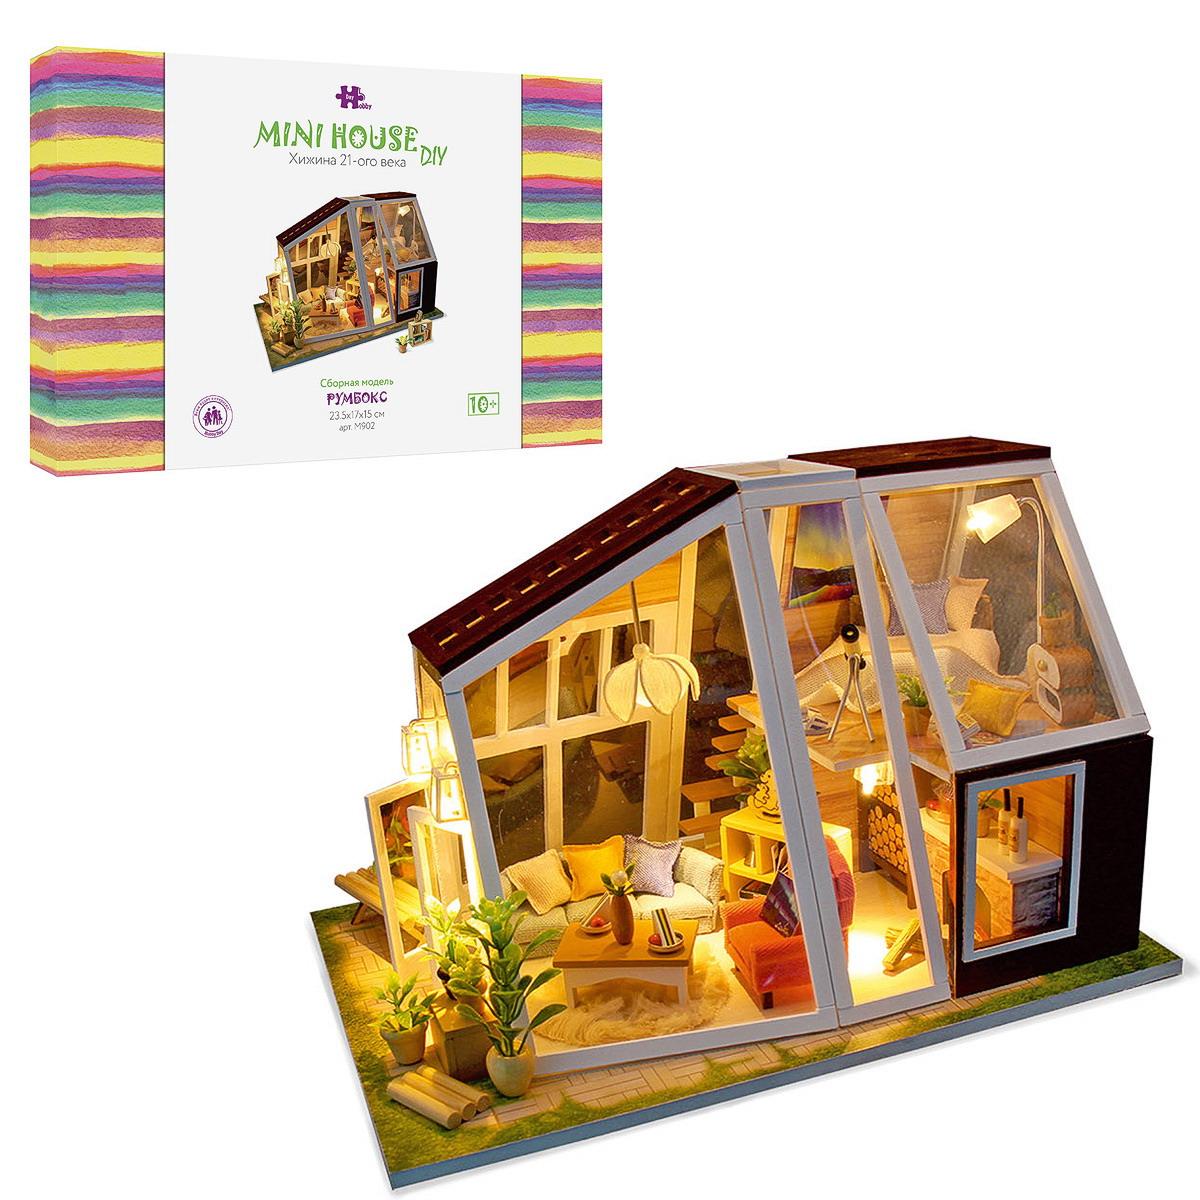 Сборная модель Hobby Day Румбокс Mini house Хижина 21-ого века M902